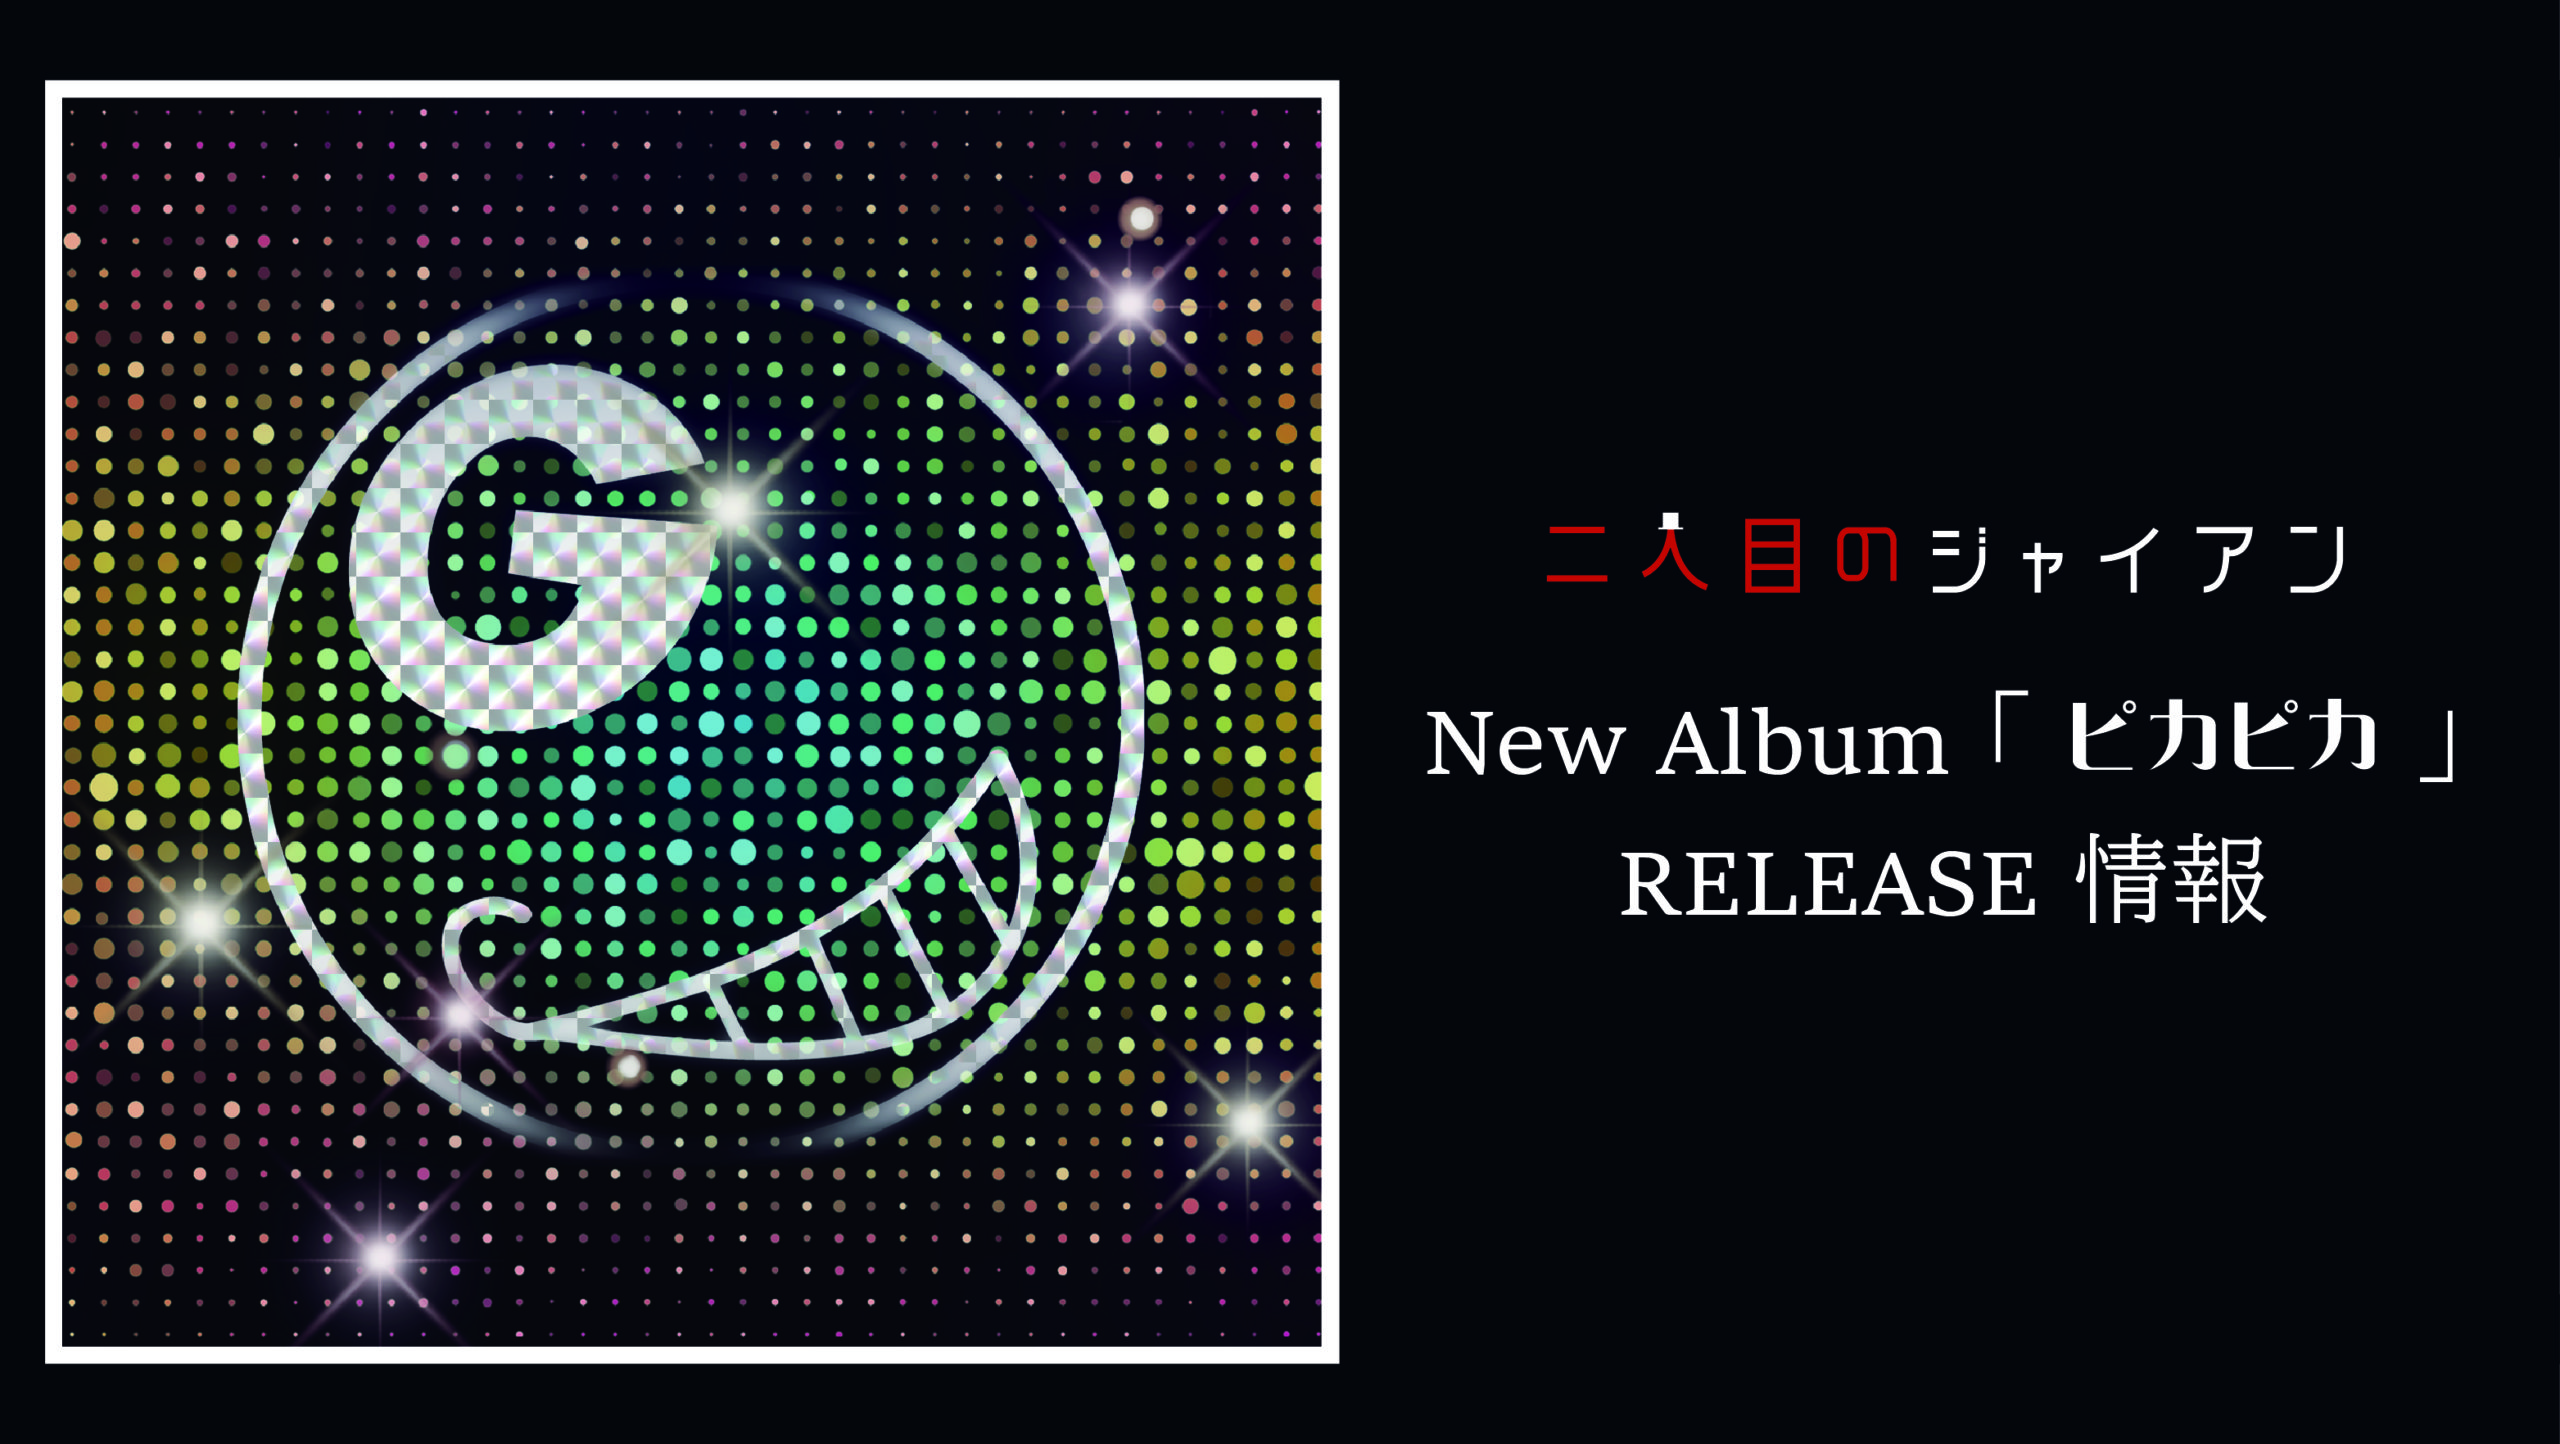 New Album「ピカピカ」RELEASE情報